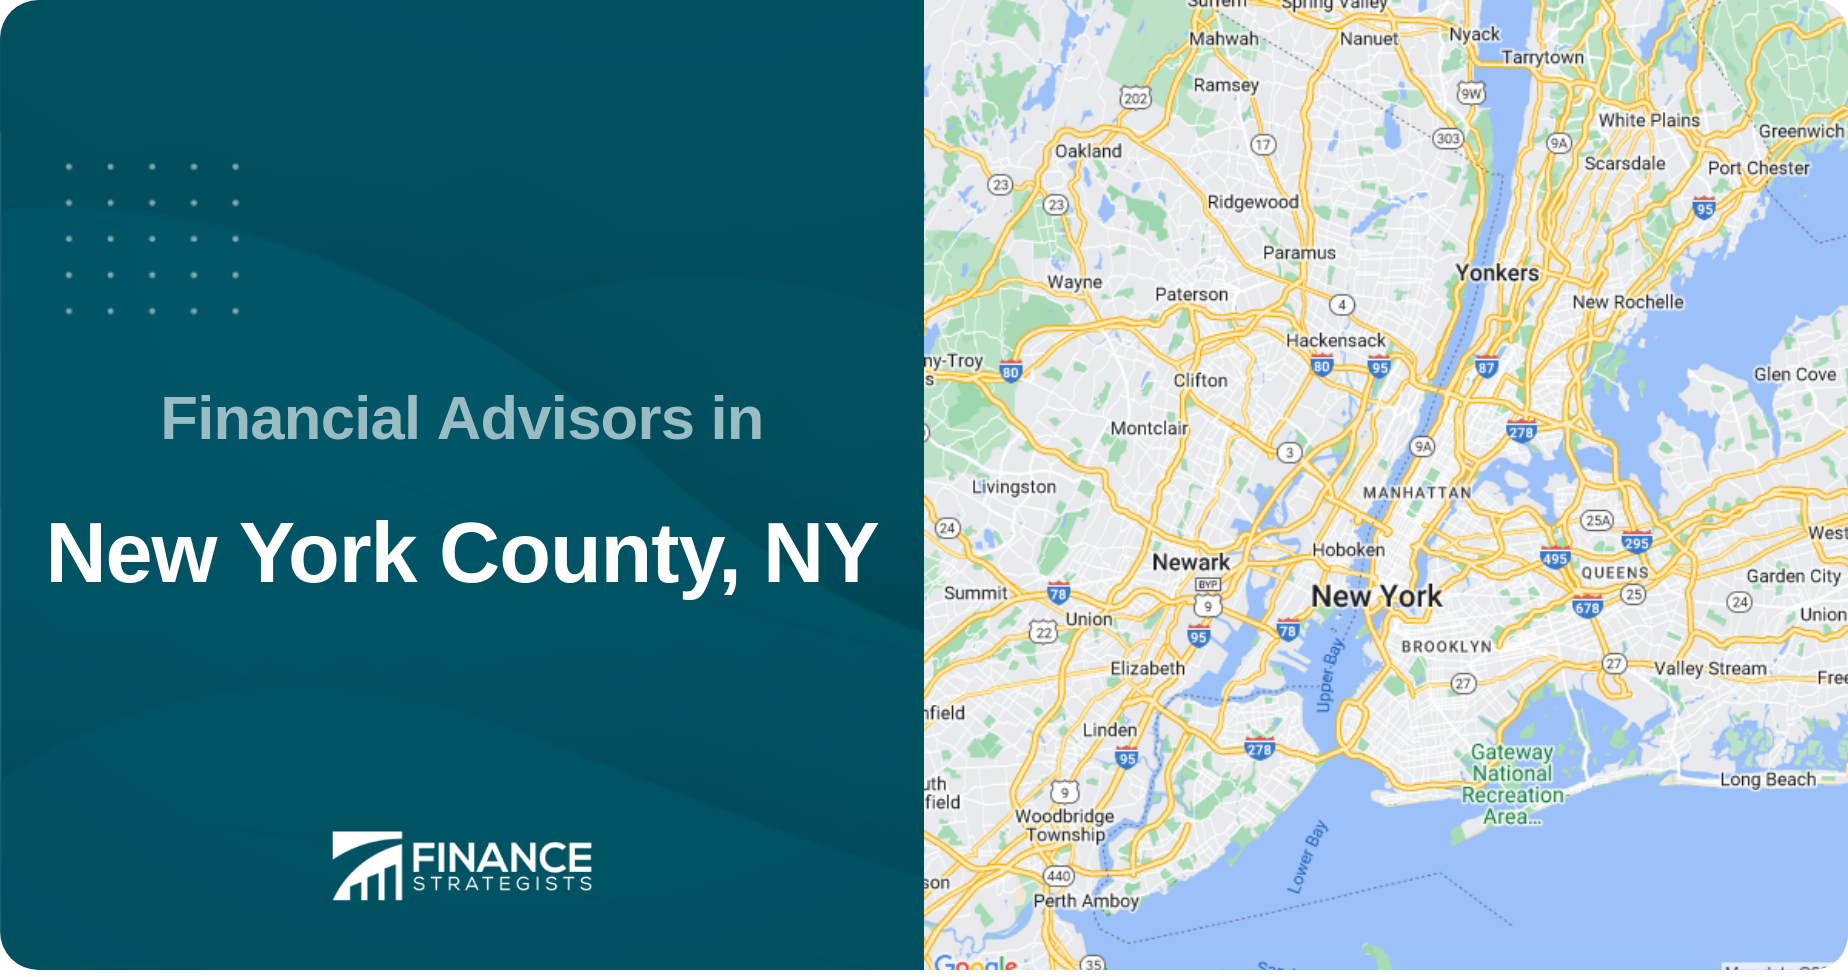 Financial Advisors in New York County, NY